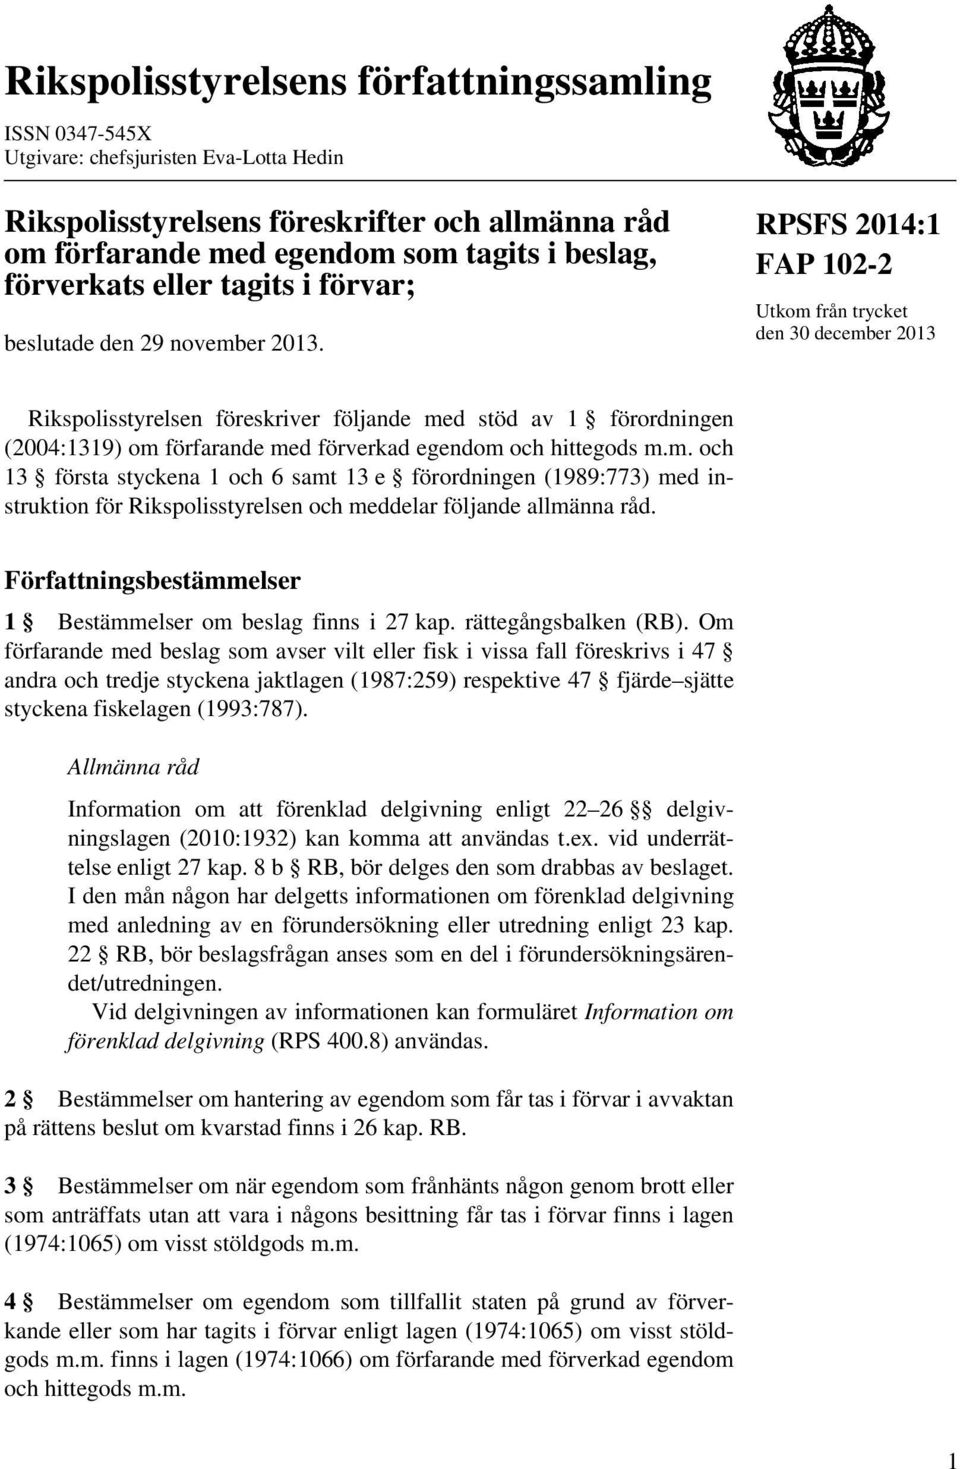 RPSFS 2014:1 FAP 102-2 Utkom från trycket den 30 december 2013 Rikspolisstyrelsen föreskriver följande med stöd av 1 förordningen (2004:1319) om förfarande med förverkad egendom och hittegods m.m. och 13 första styckena 1 och 6 samt 13 e förordningen (1989:773) med instruktion för Rikspolisstyrelsen och meddelar följande allmänna råd.